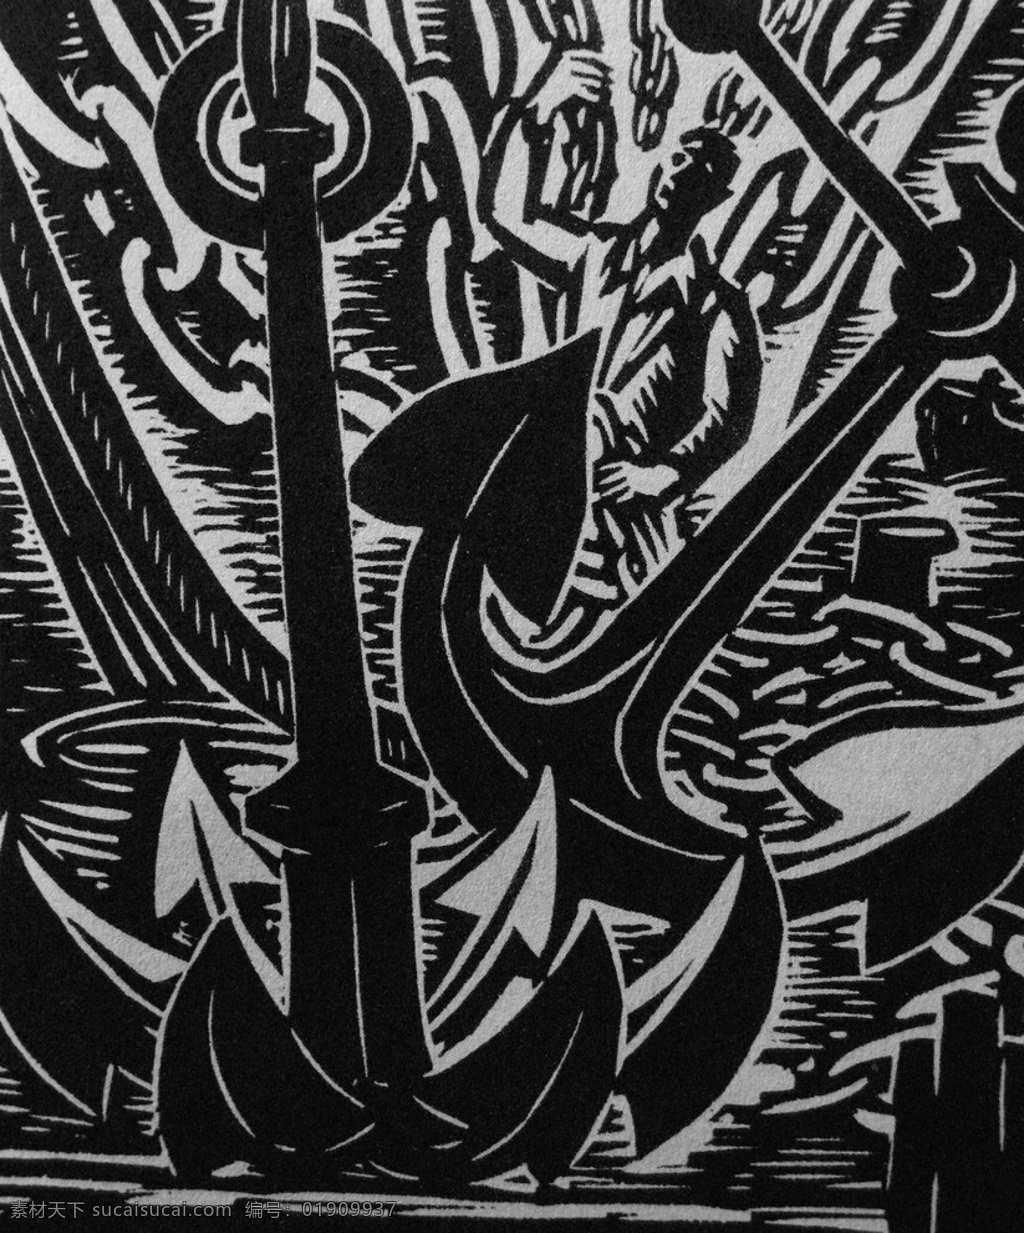 汉堡组画之三 木刻版画 法朗 士 麦绥莱勒 1967年 抛锚 铁锚 链子 铁链 人物 海水 男人 西装 艺术 绘画 雕版 印刷 木刻 版画 作品 绘画书法 文化艺术